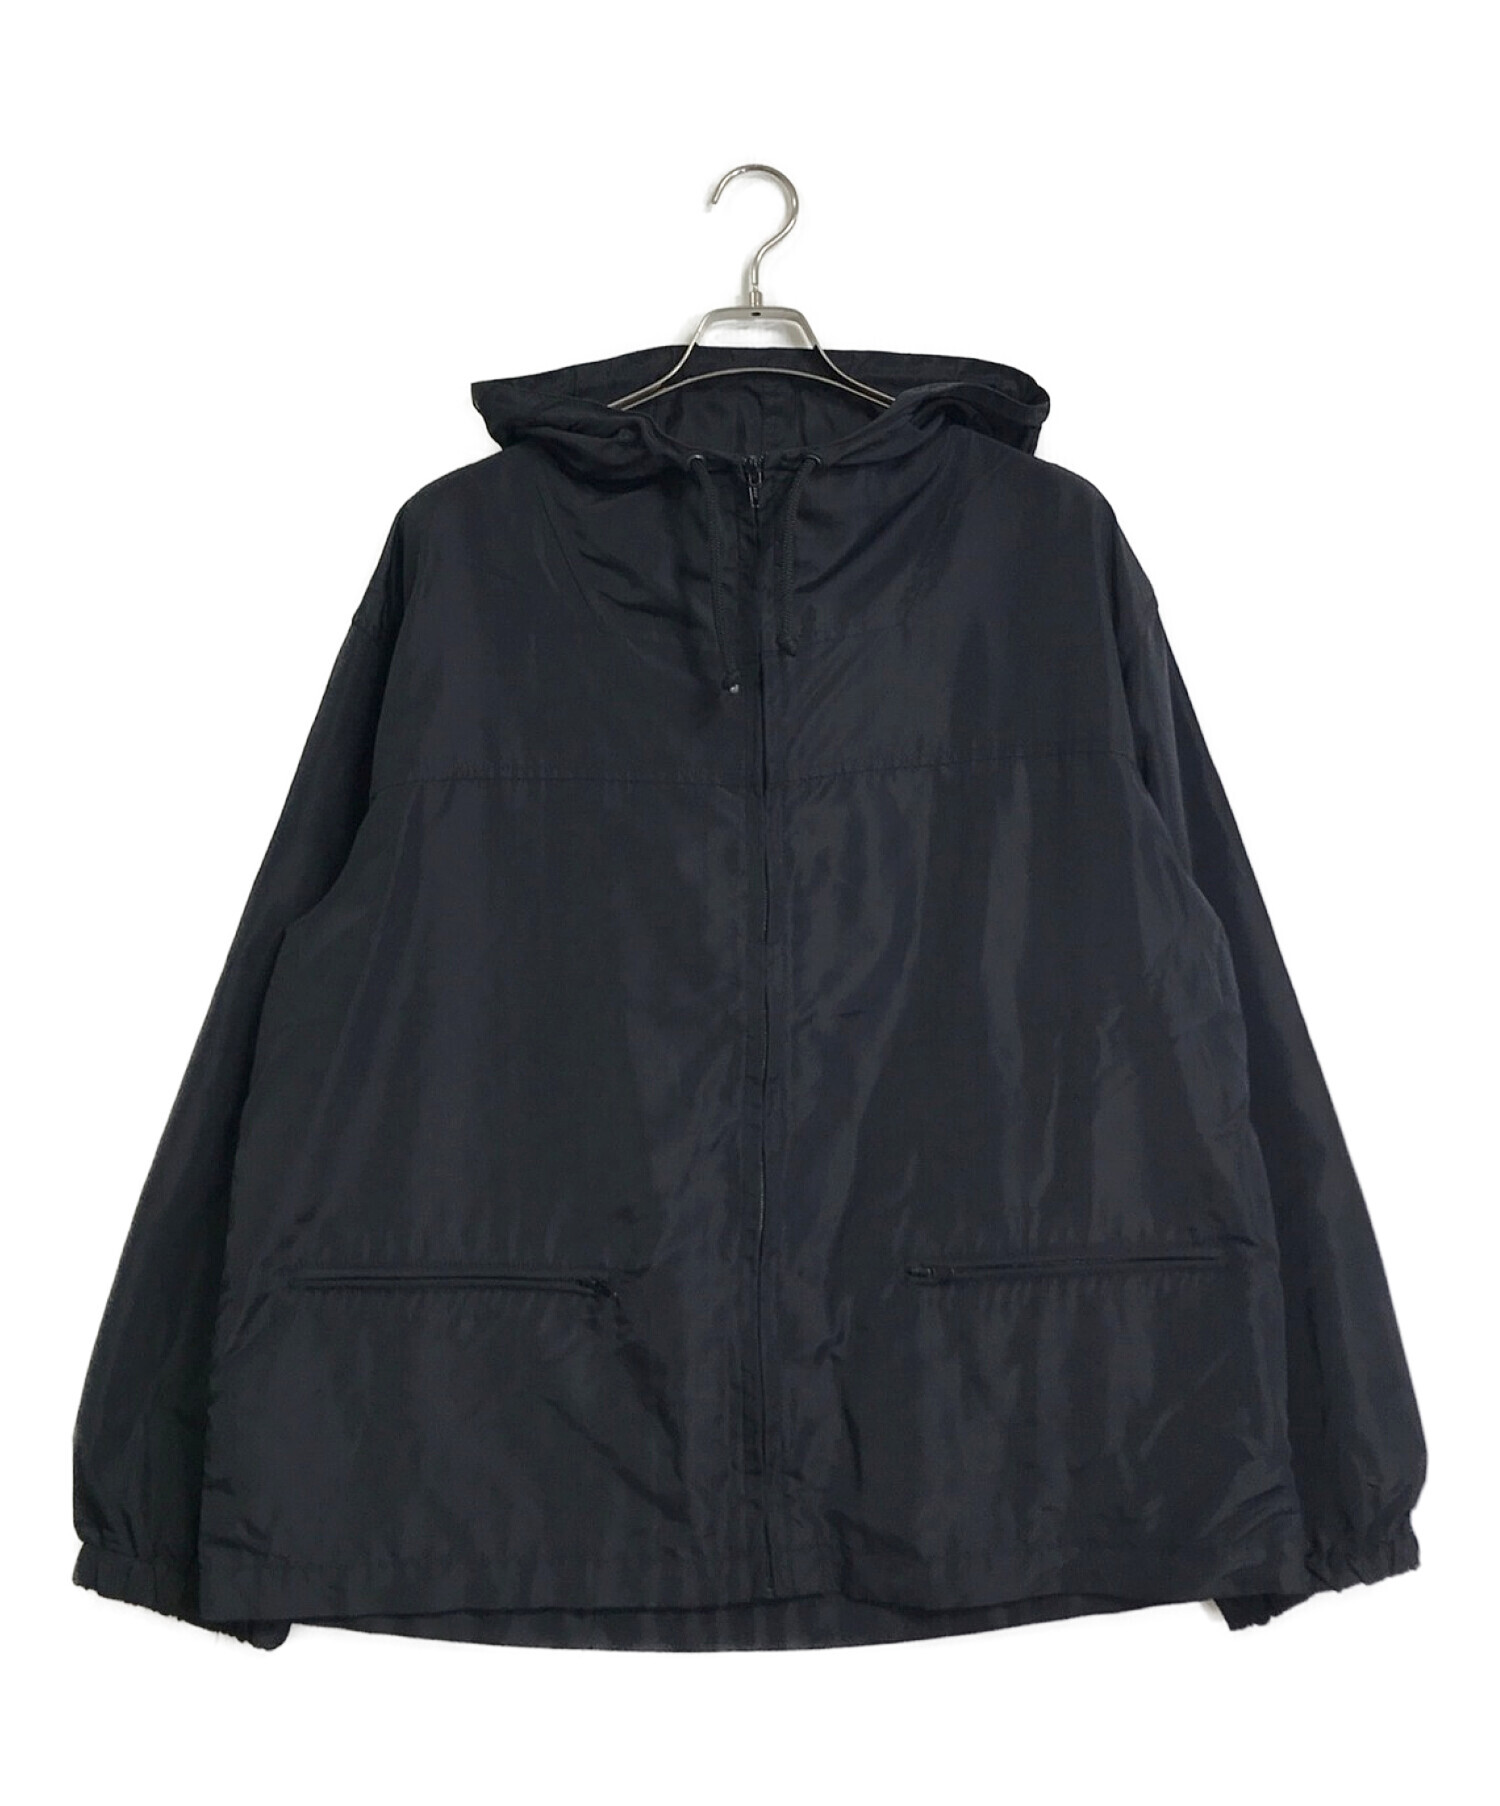 HUGO BOSS (ヒューゴ ボス) バックロゴナイロンパッカブルフーデッドジャケット ブラック サイズ:S